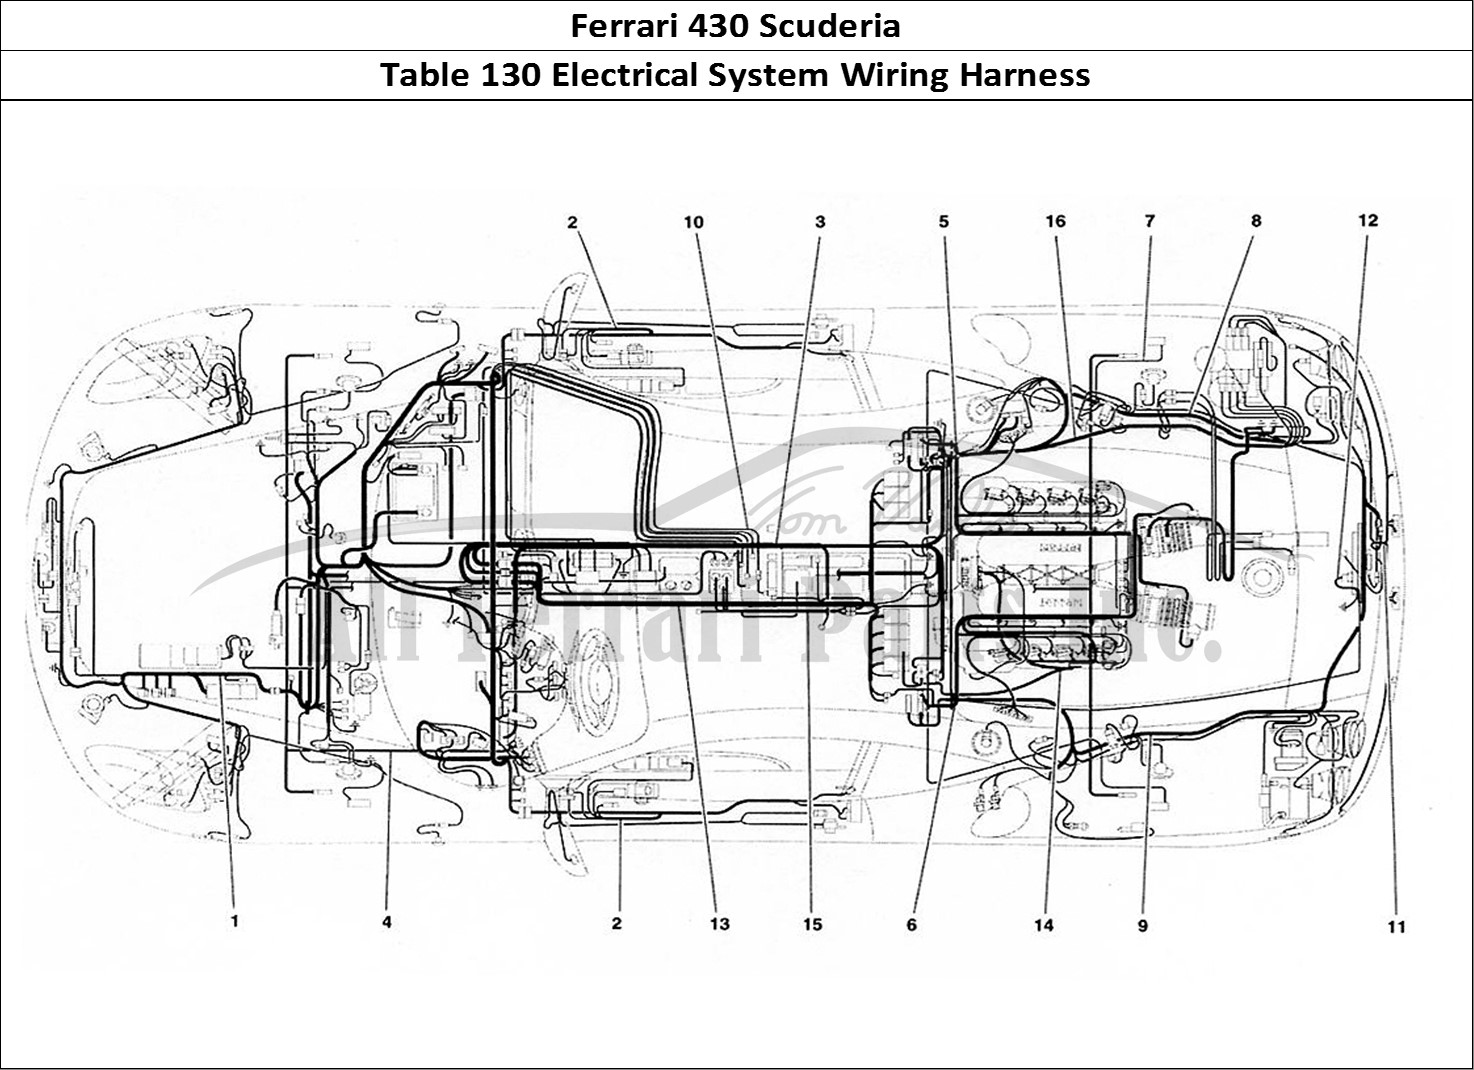 Ferrari Parts Ferrari 430 Scuderia Page 130 Electrical System